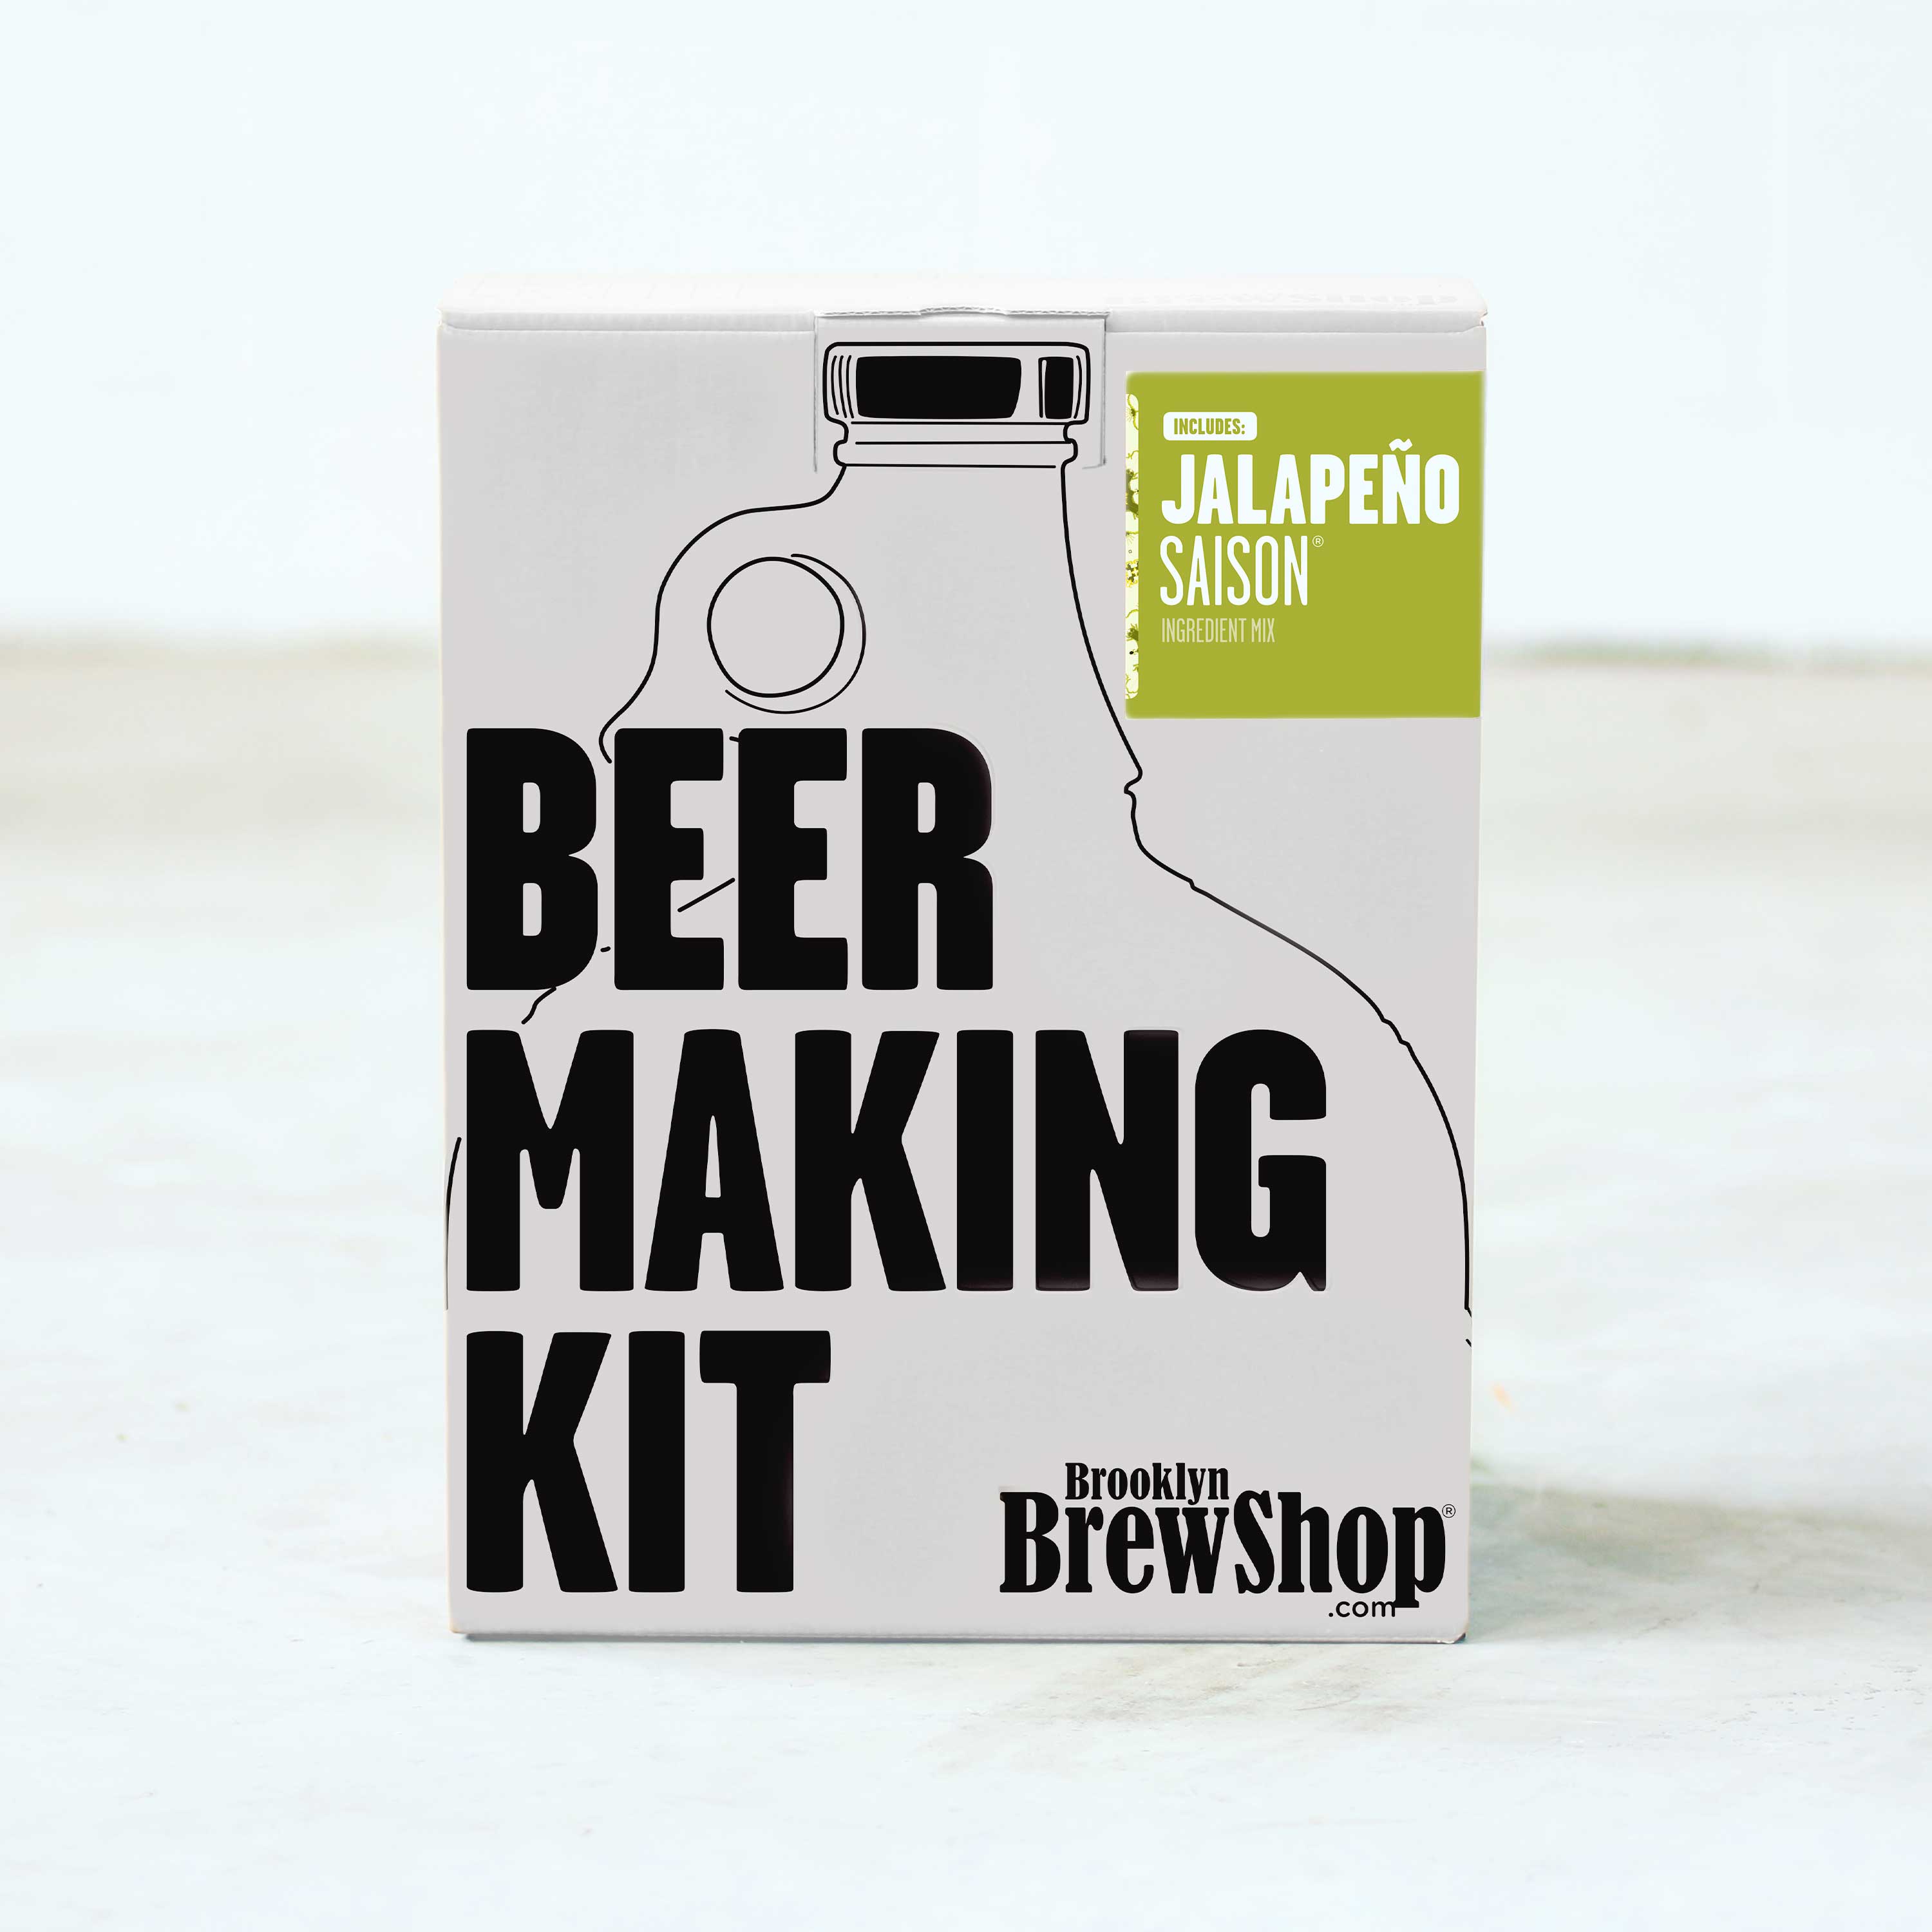 Image of Jalapeño Saison®: Beer Making Kit